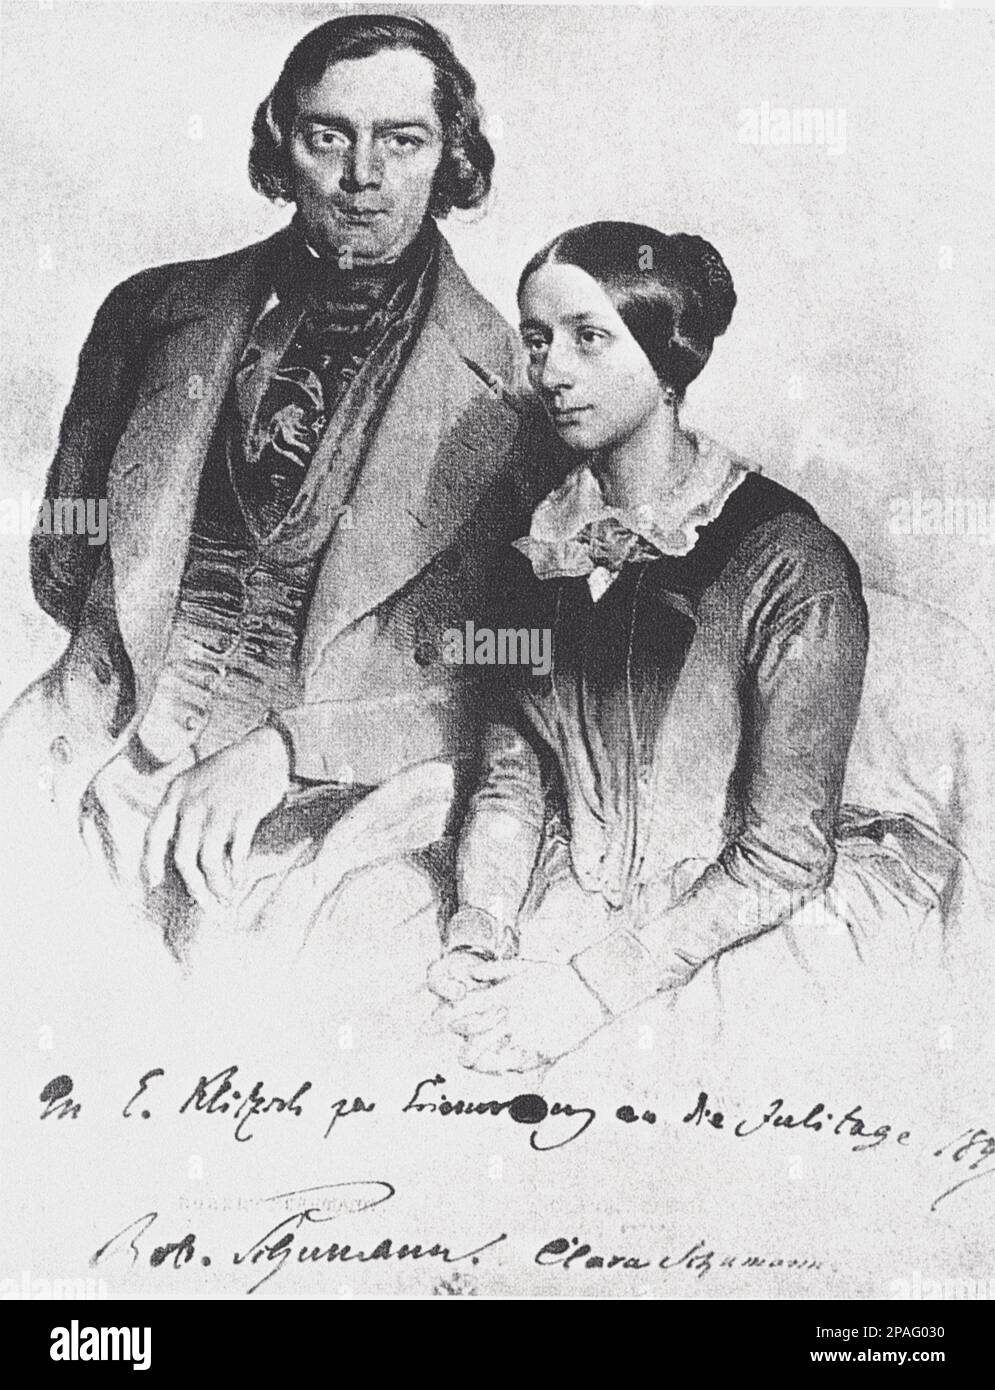 1847 : der gefeierte deutsche Komponist ROBERT SCHUMANN ( 1810 - 1856 ) und seine Frau CLARA Wieck ( 1819 - 1896 ), Freunde von Johannes Brahms - MUSICA CLASSICA - KLASSISCH - COMPOSITORE - MUSICISTA - Portrait - ritratto - profilo - Profil - Incisione - Gravur - Maritos e Moglie ---- ARCHIVIO GBB Stockfoto